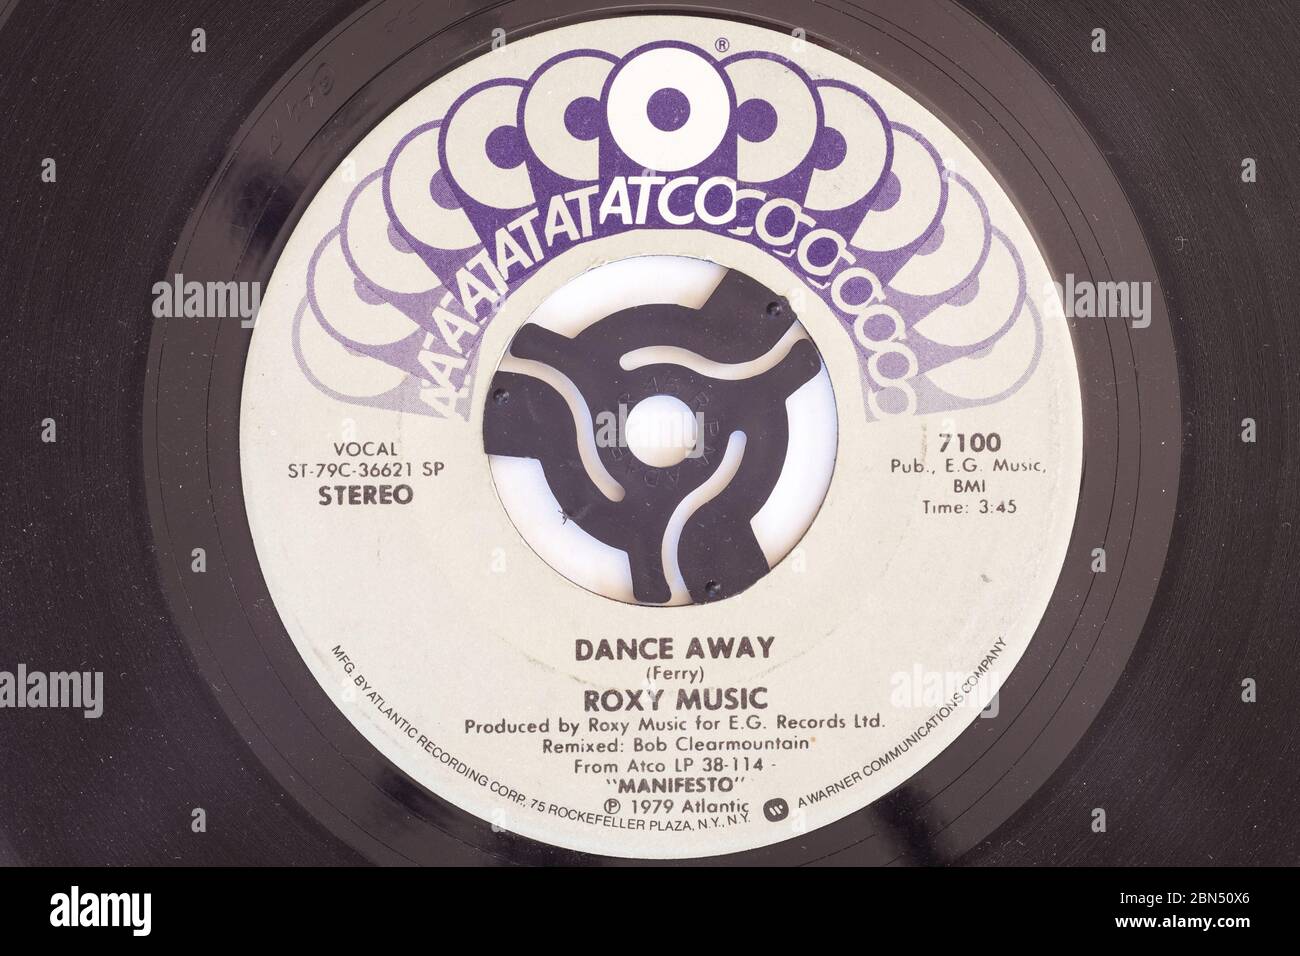 Roxy Music Dance Away Stock Photo